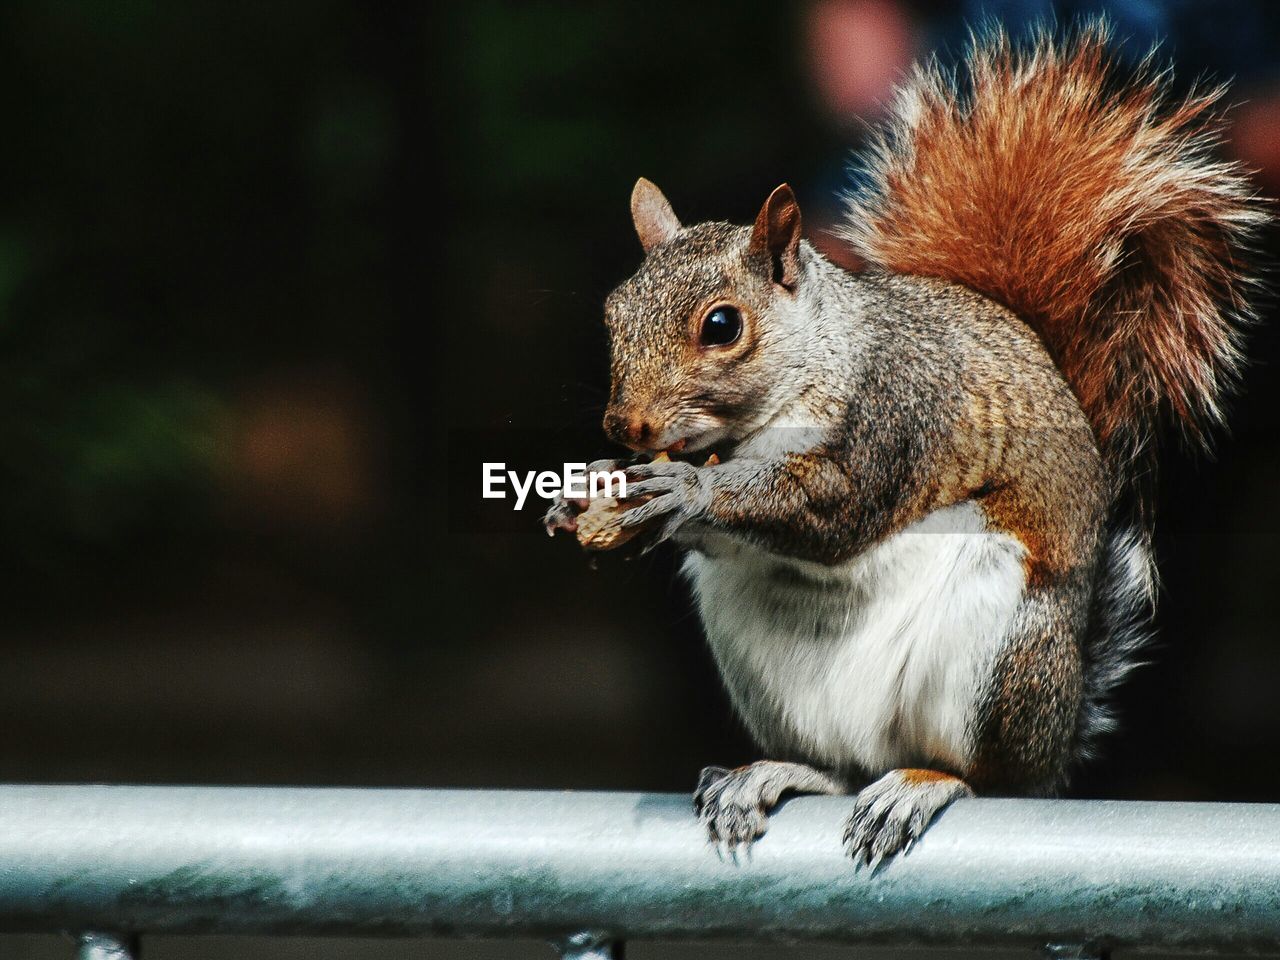 Close-up of squirrel holding peanut